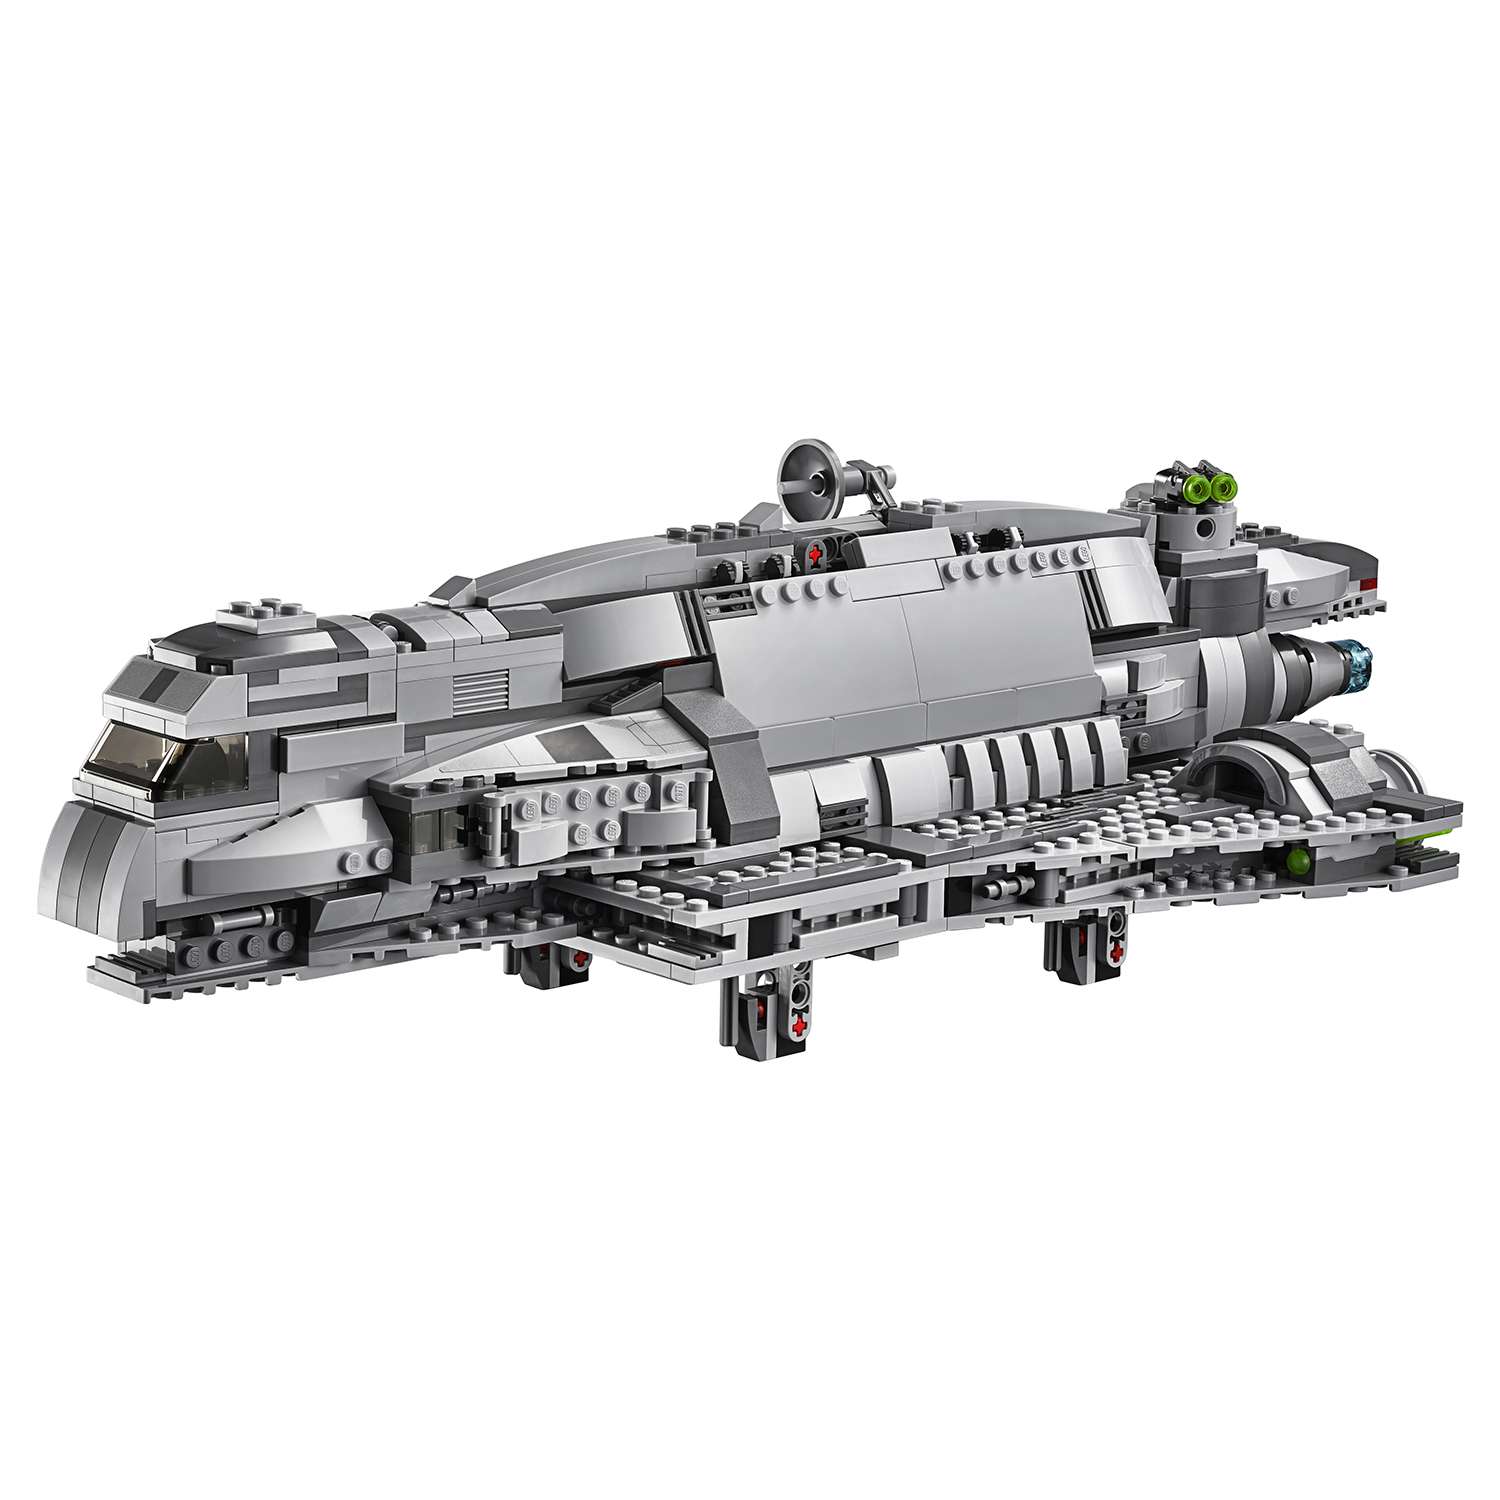 Конструктор LEGO Star Wars TM Имперский десантный корабль™ (Imperial Assault Carrier™) (75106) - фото 11